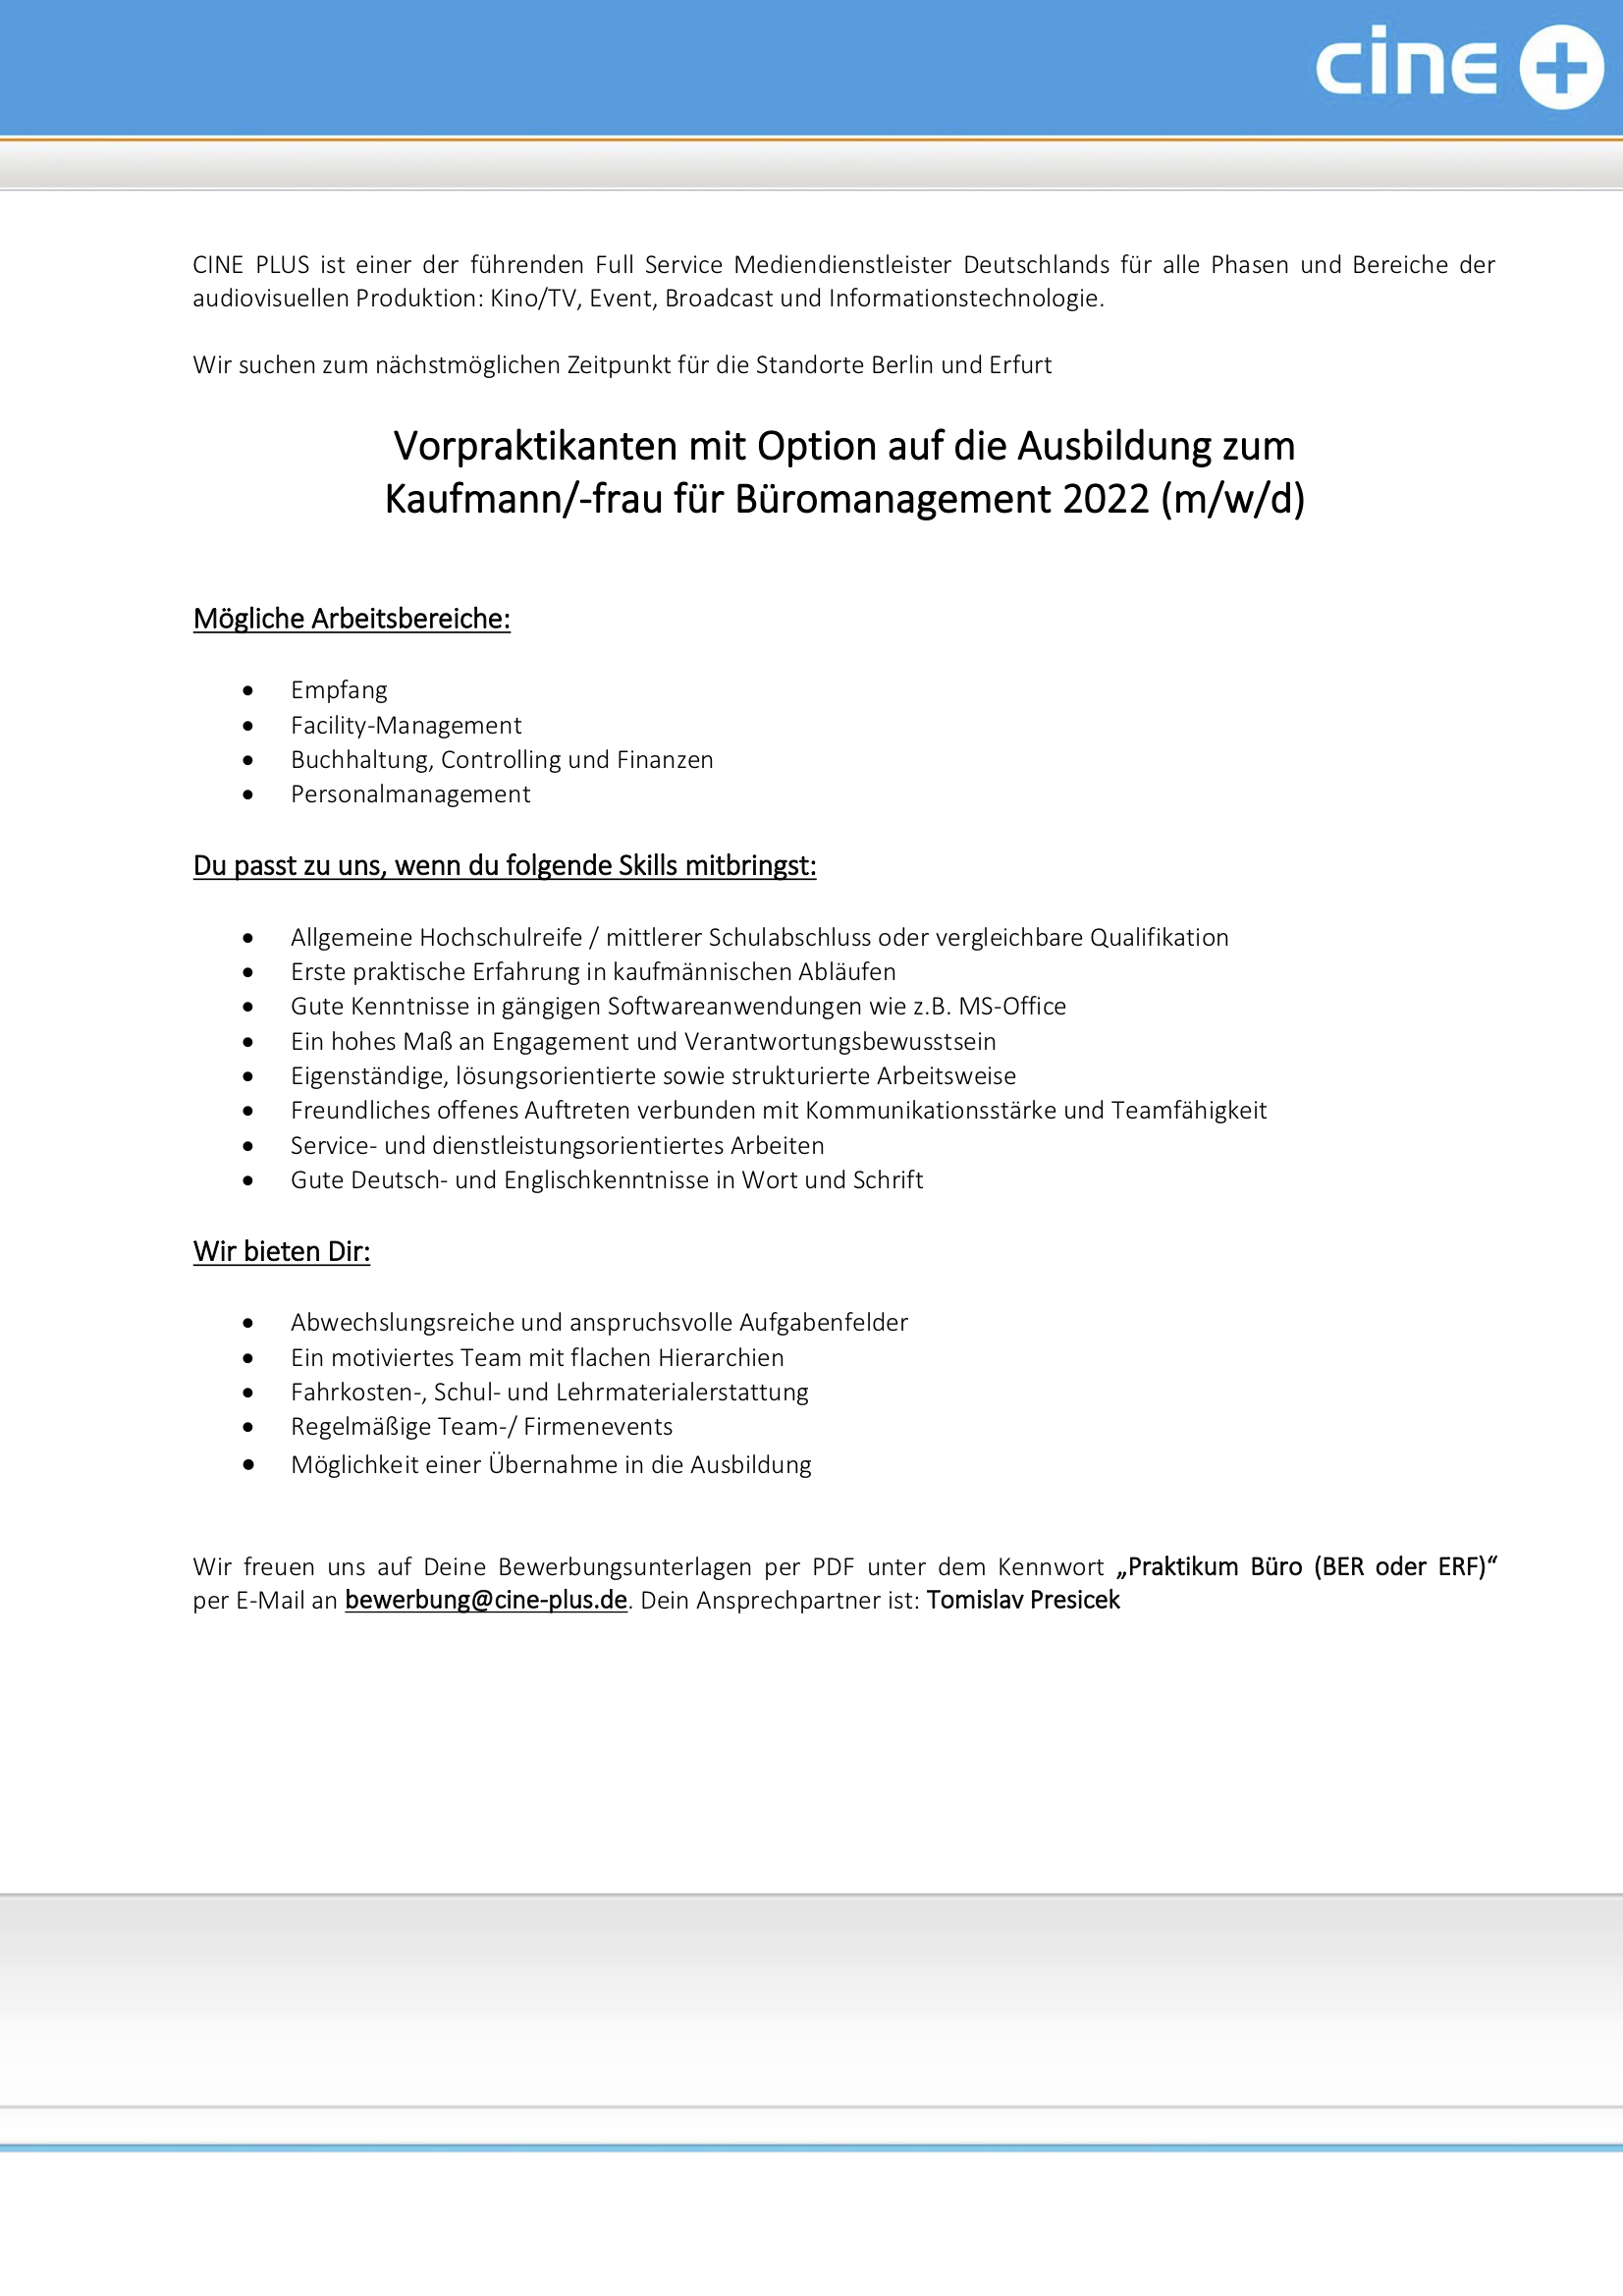 Vorpraktikanten, Opt. auf Ausb. Kaufmann/-frau für Büromanagement (m/w/d)